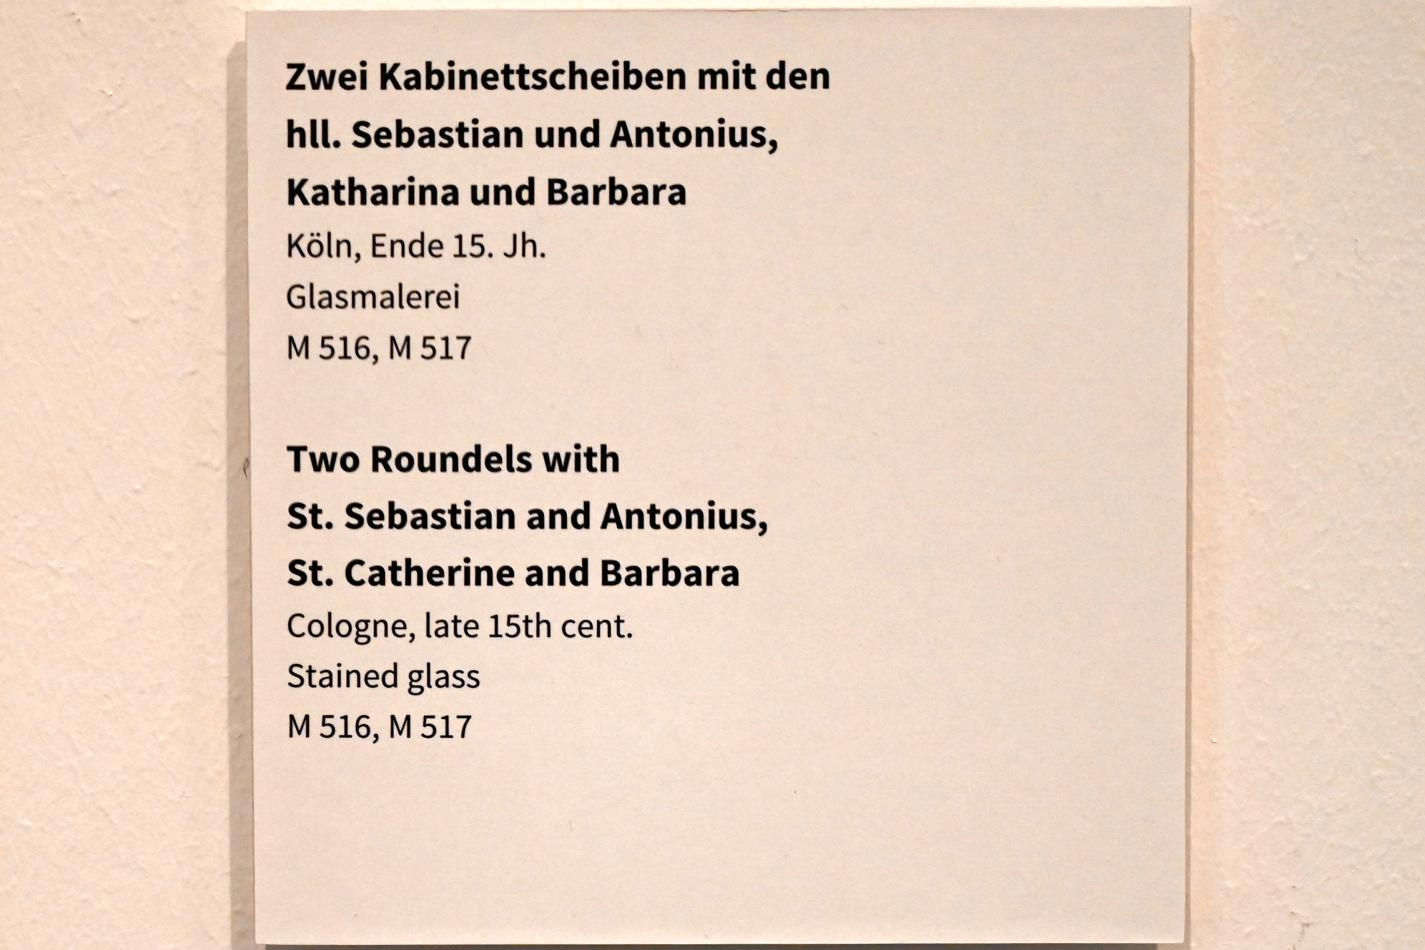 Zwei Kabinettscheiben mit den hll.  Sebastian und Antonius, Katharina und Barbara, Köln, Museum Schnütgen, Saal 3, Ende 15. Jhd., Bild 2/2